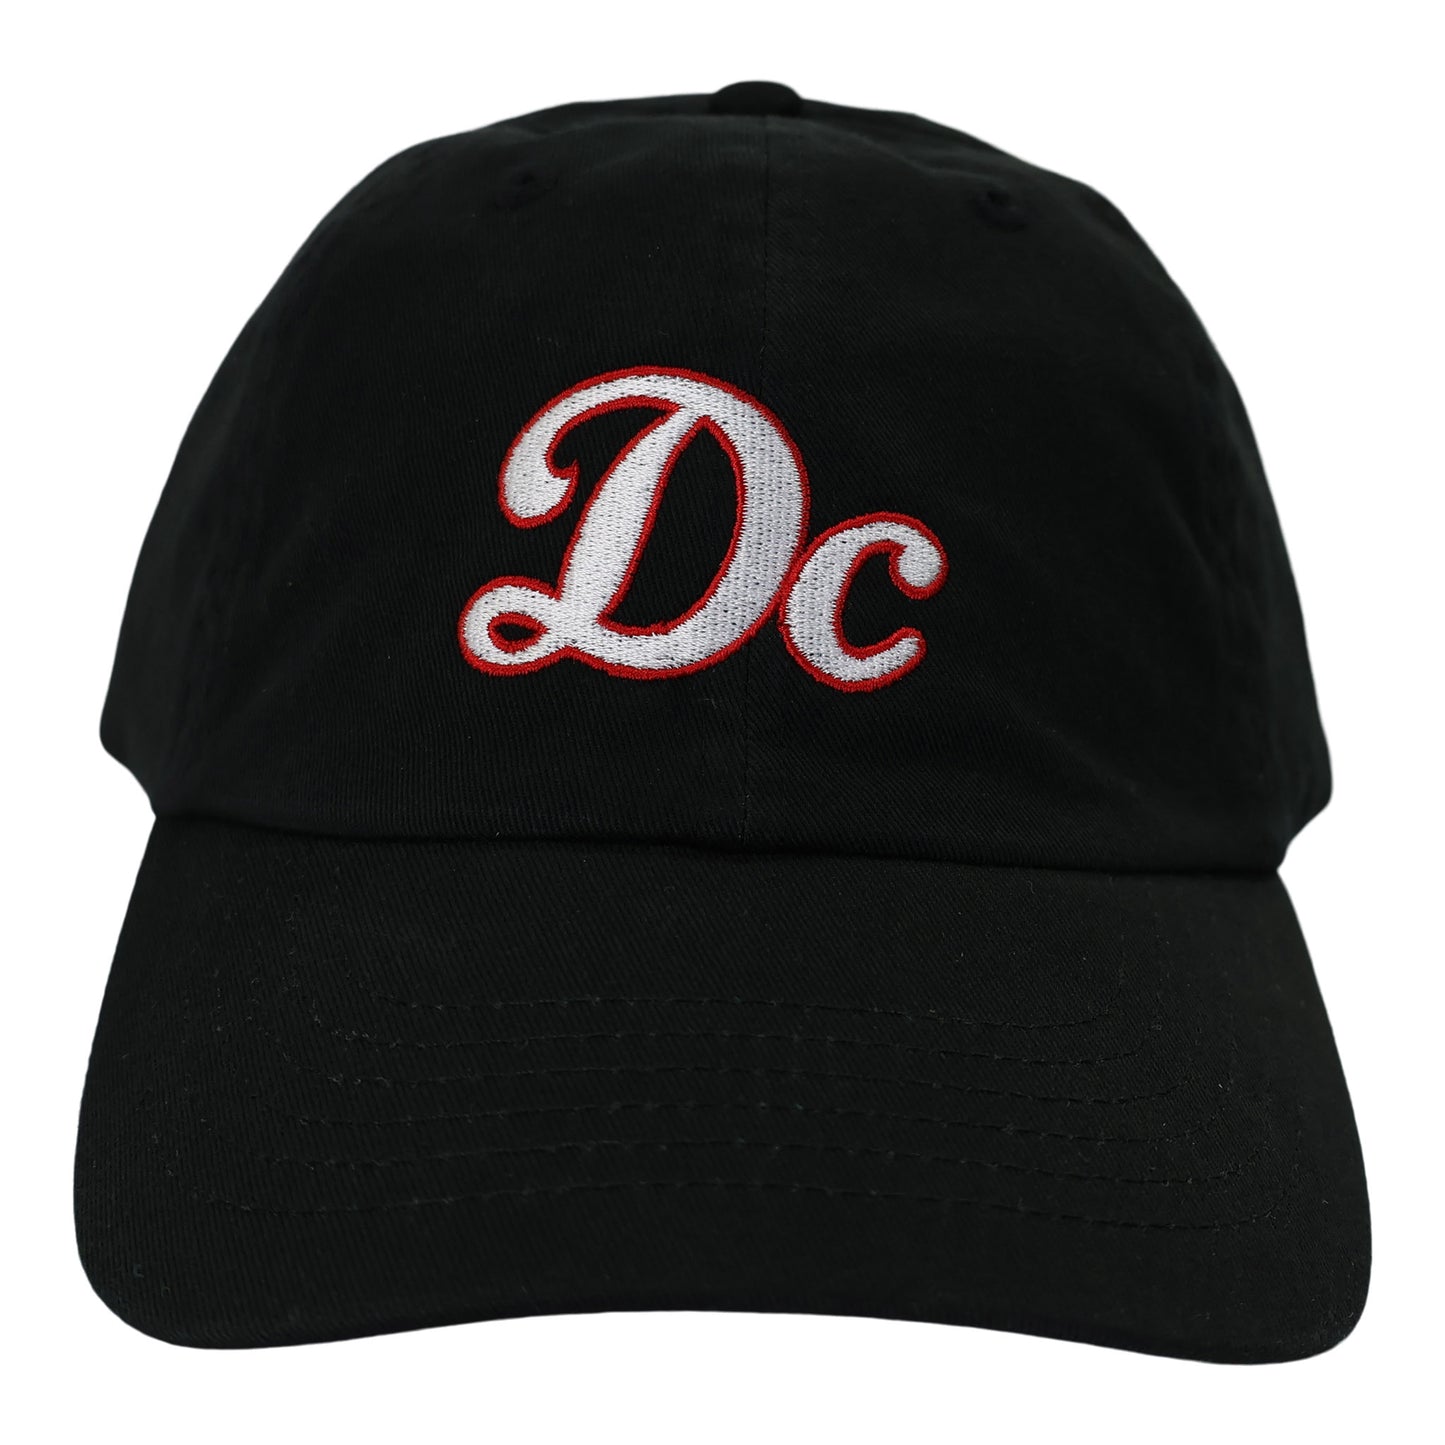 Unisex 'DC Clean' Classic Dad hat